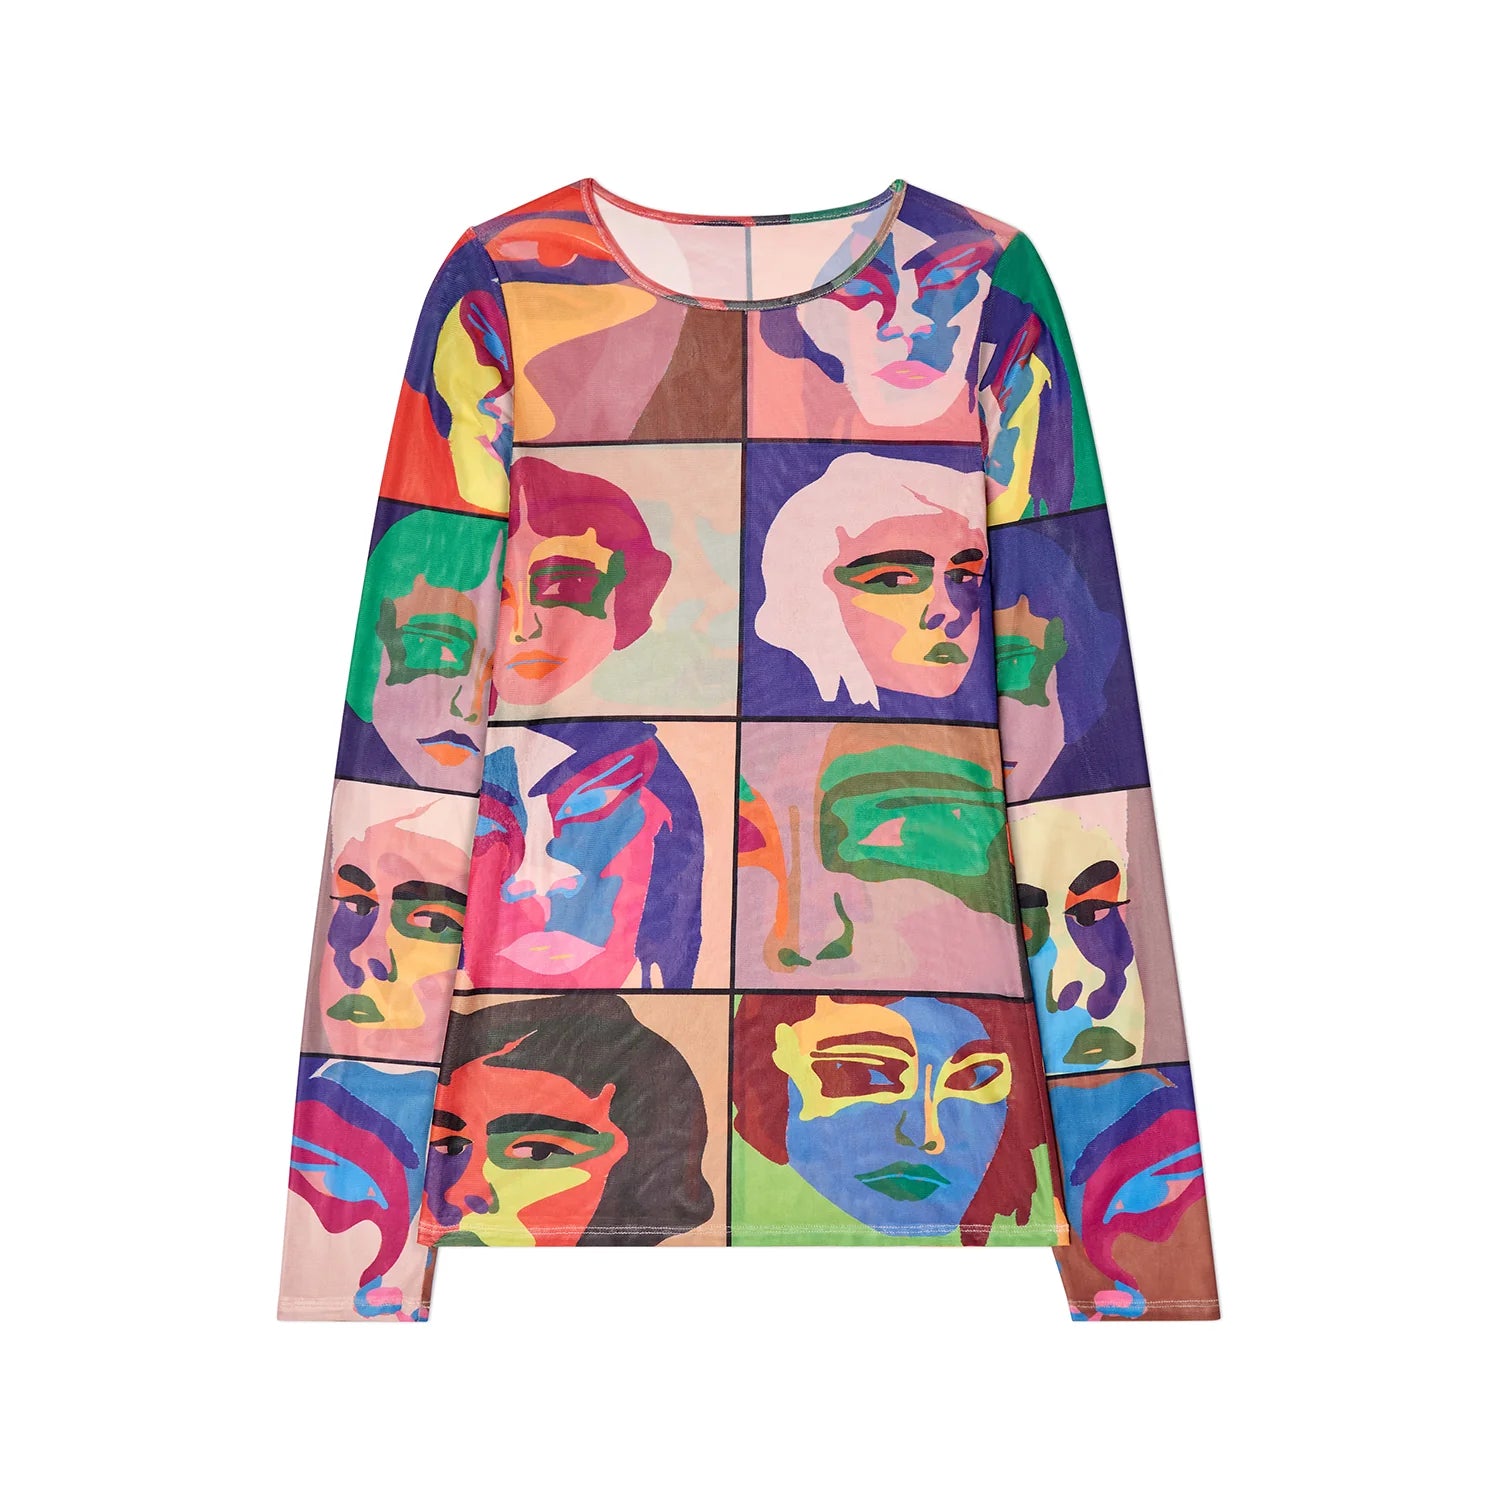 Kidsuper Faces Printed Mesh Shirt - Multi